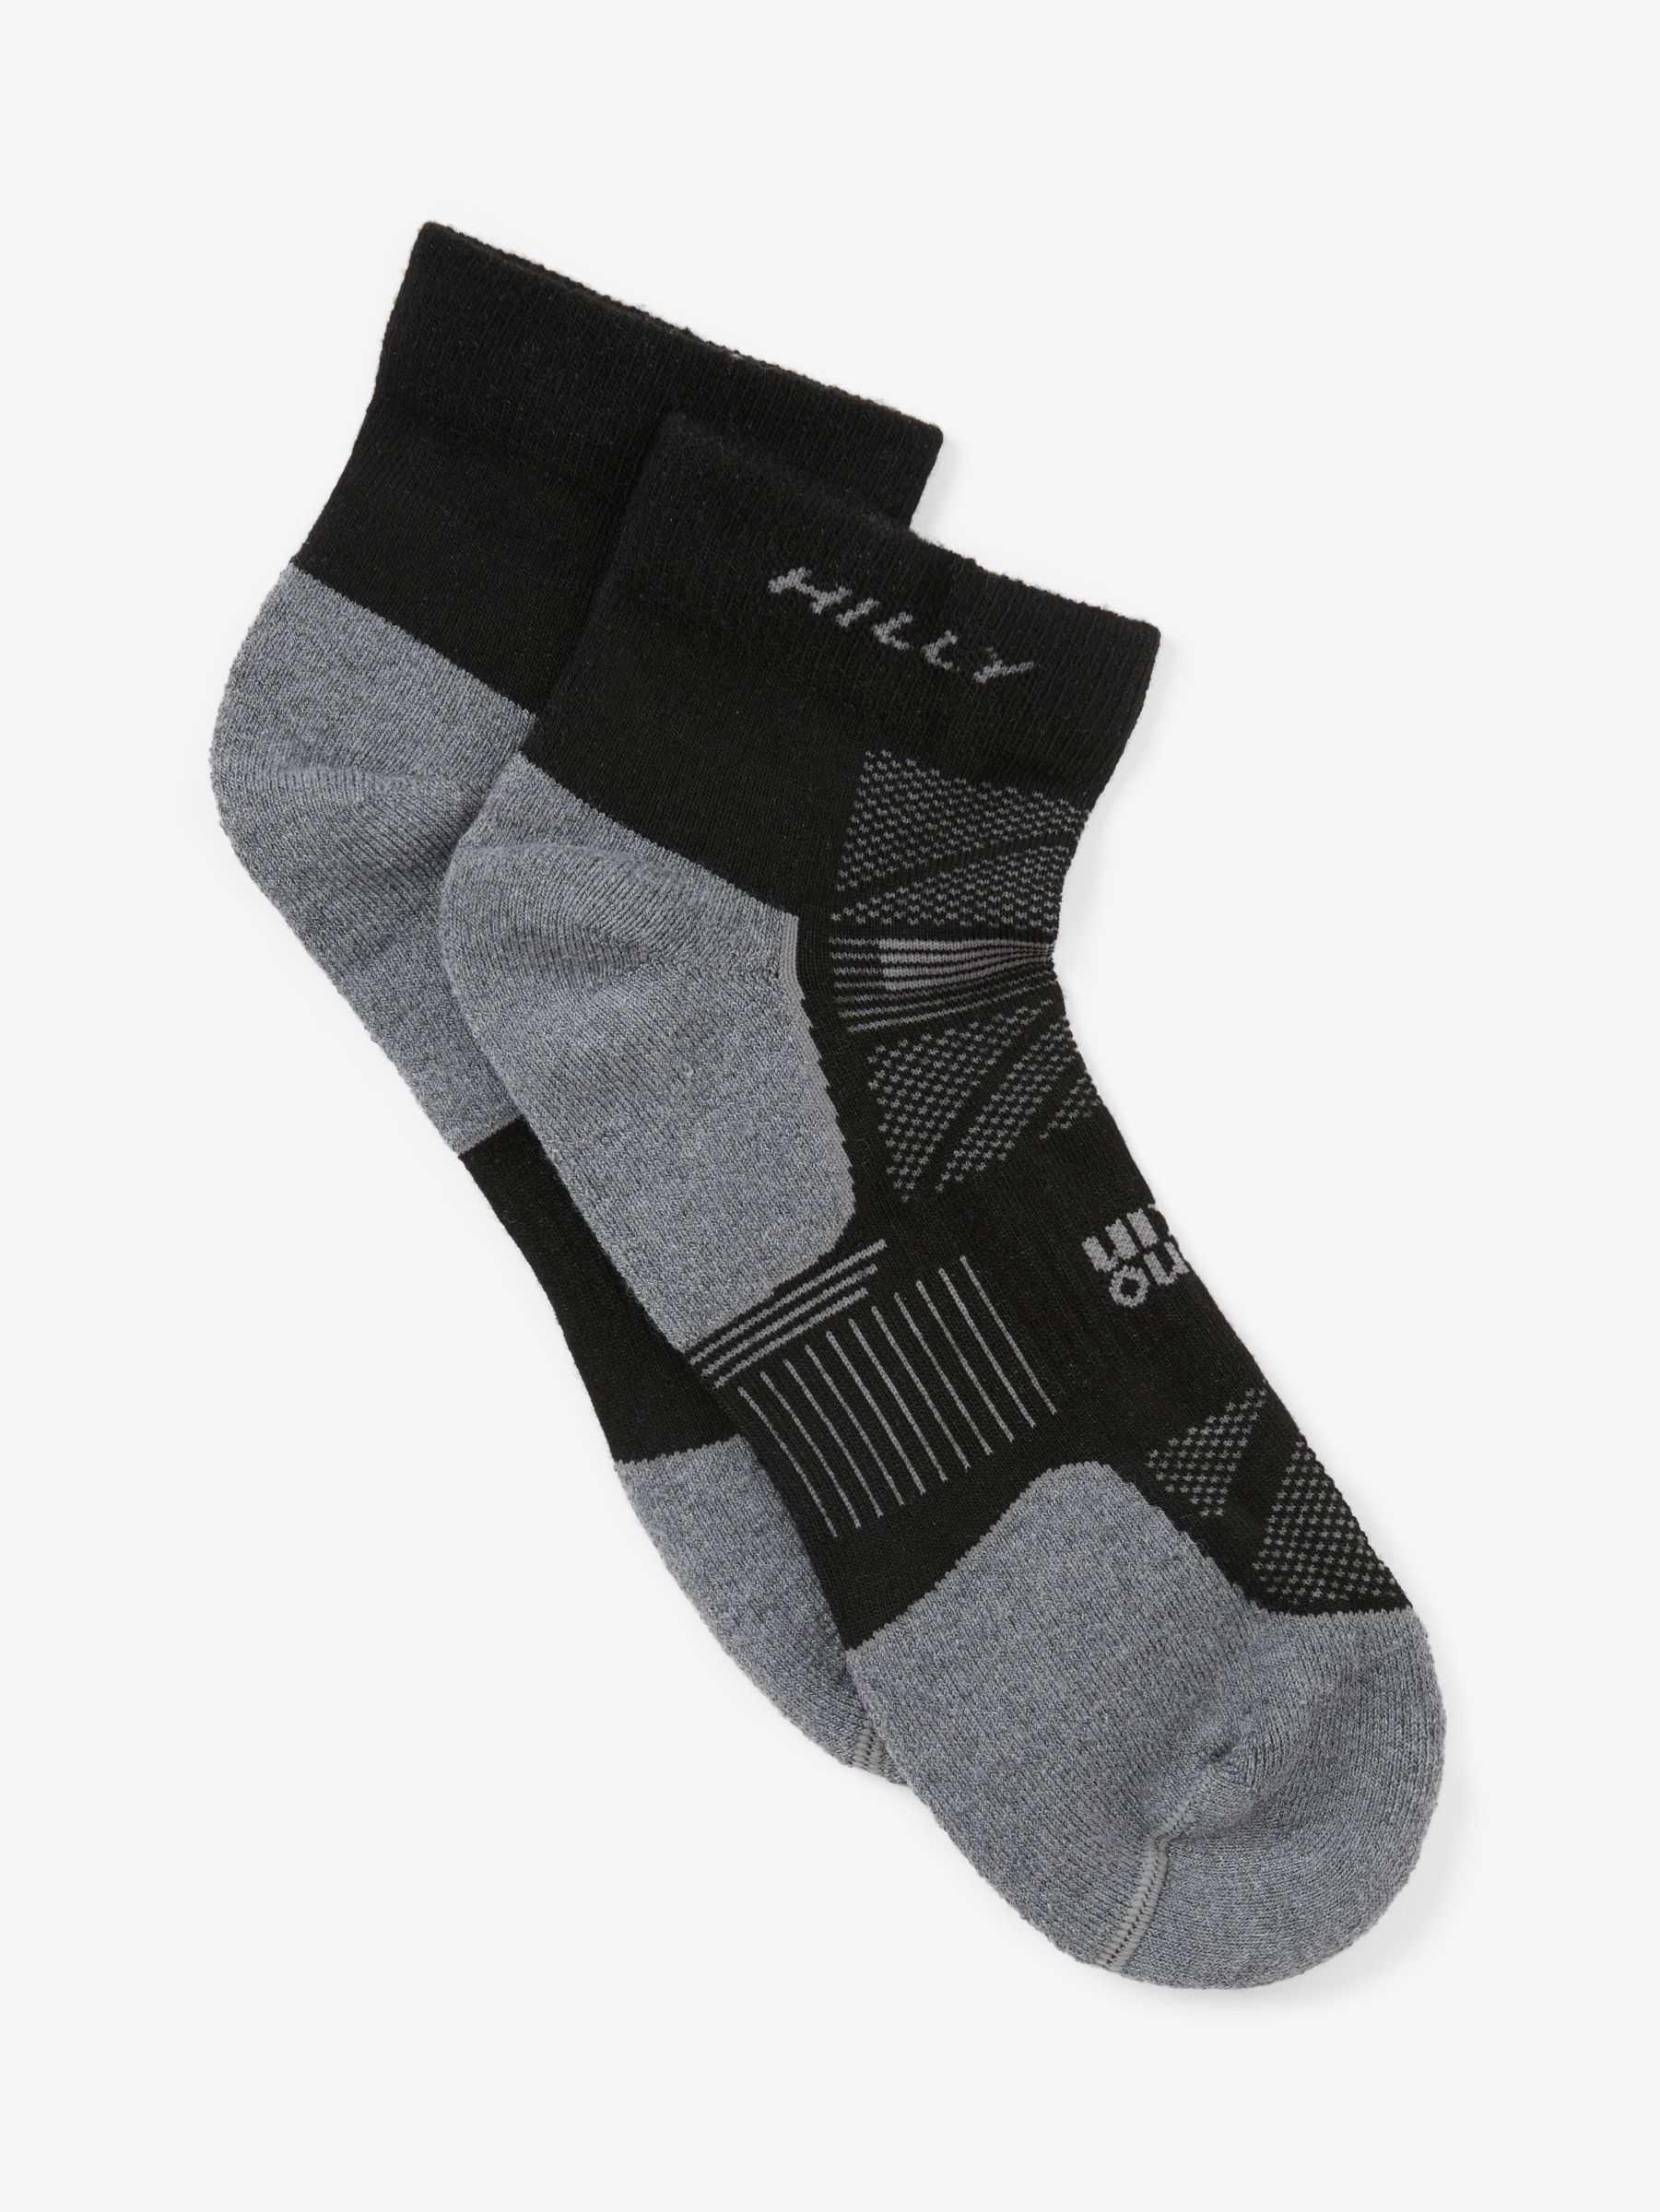 Black/Grey/Marl Hilly Supreme Anklet Super Soft Technical Running Socks 